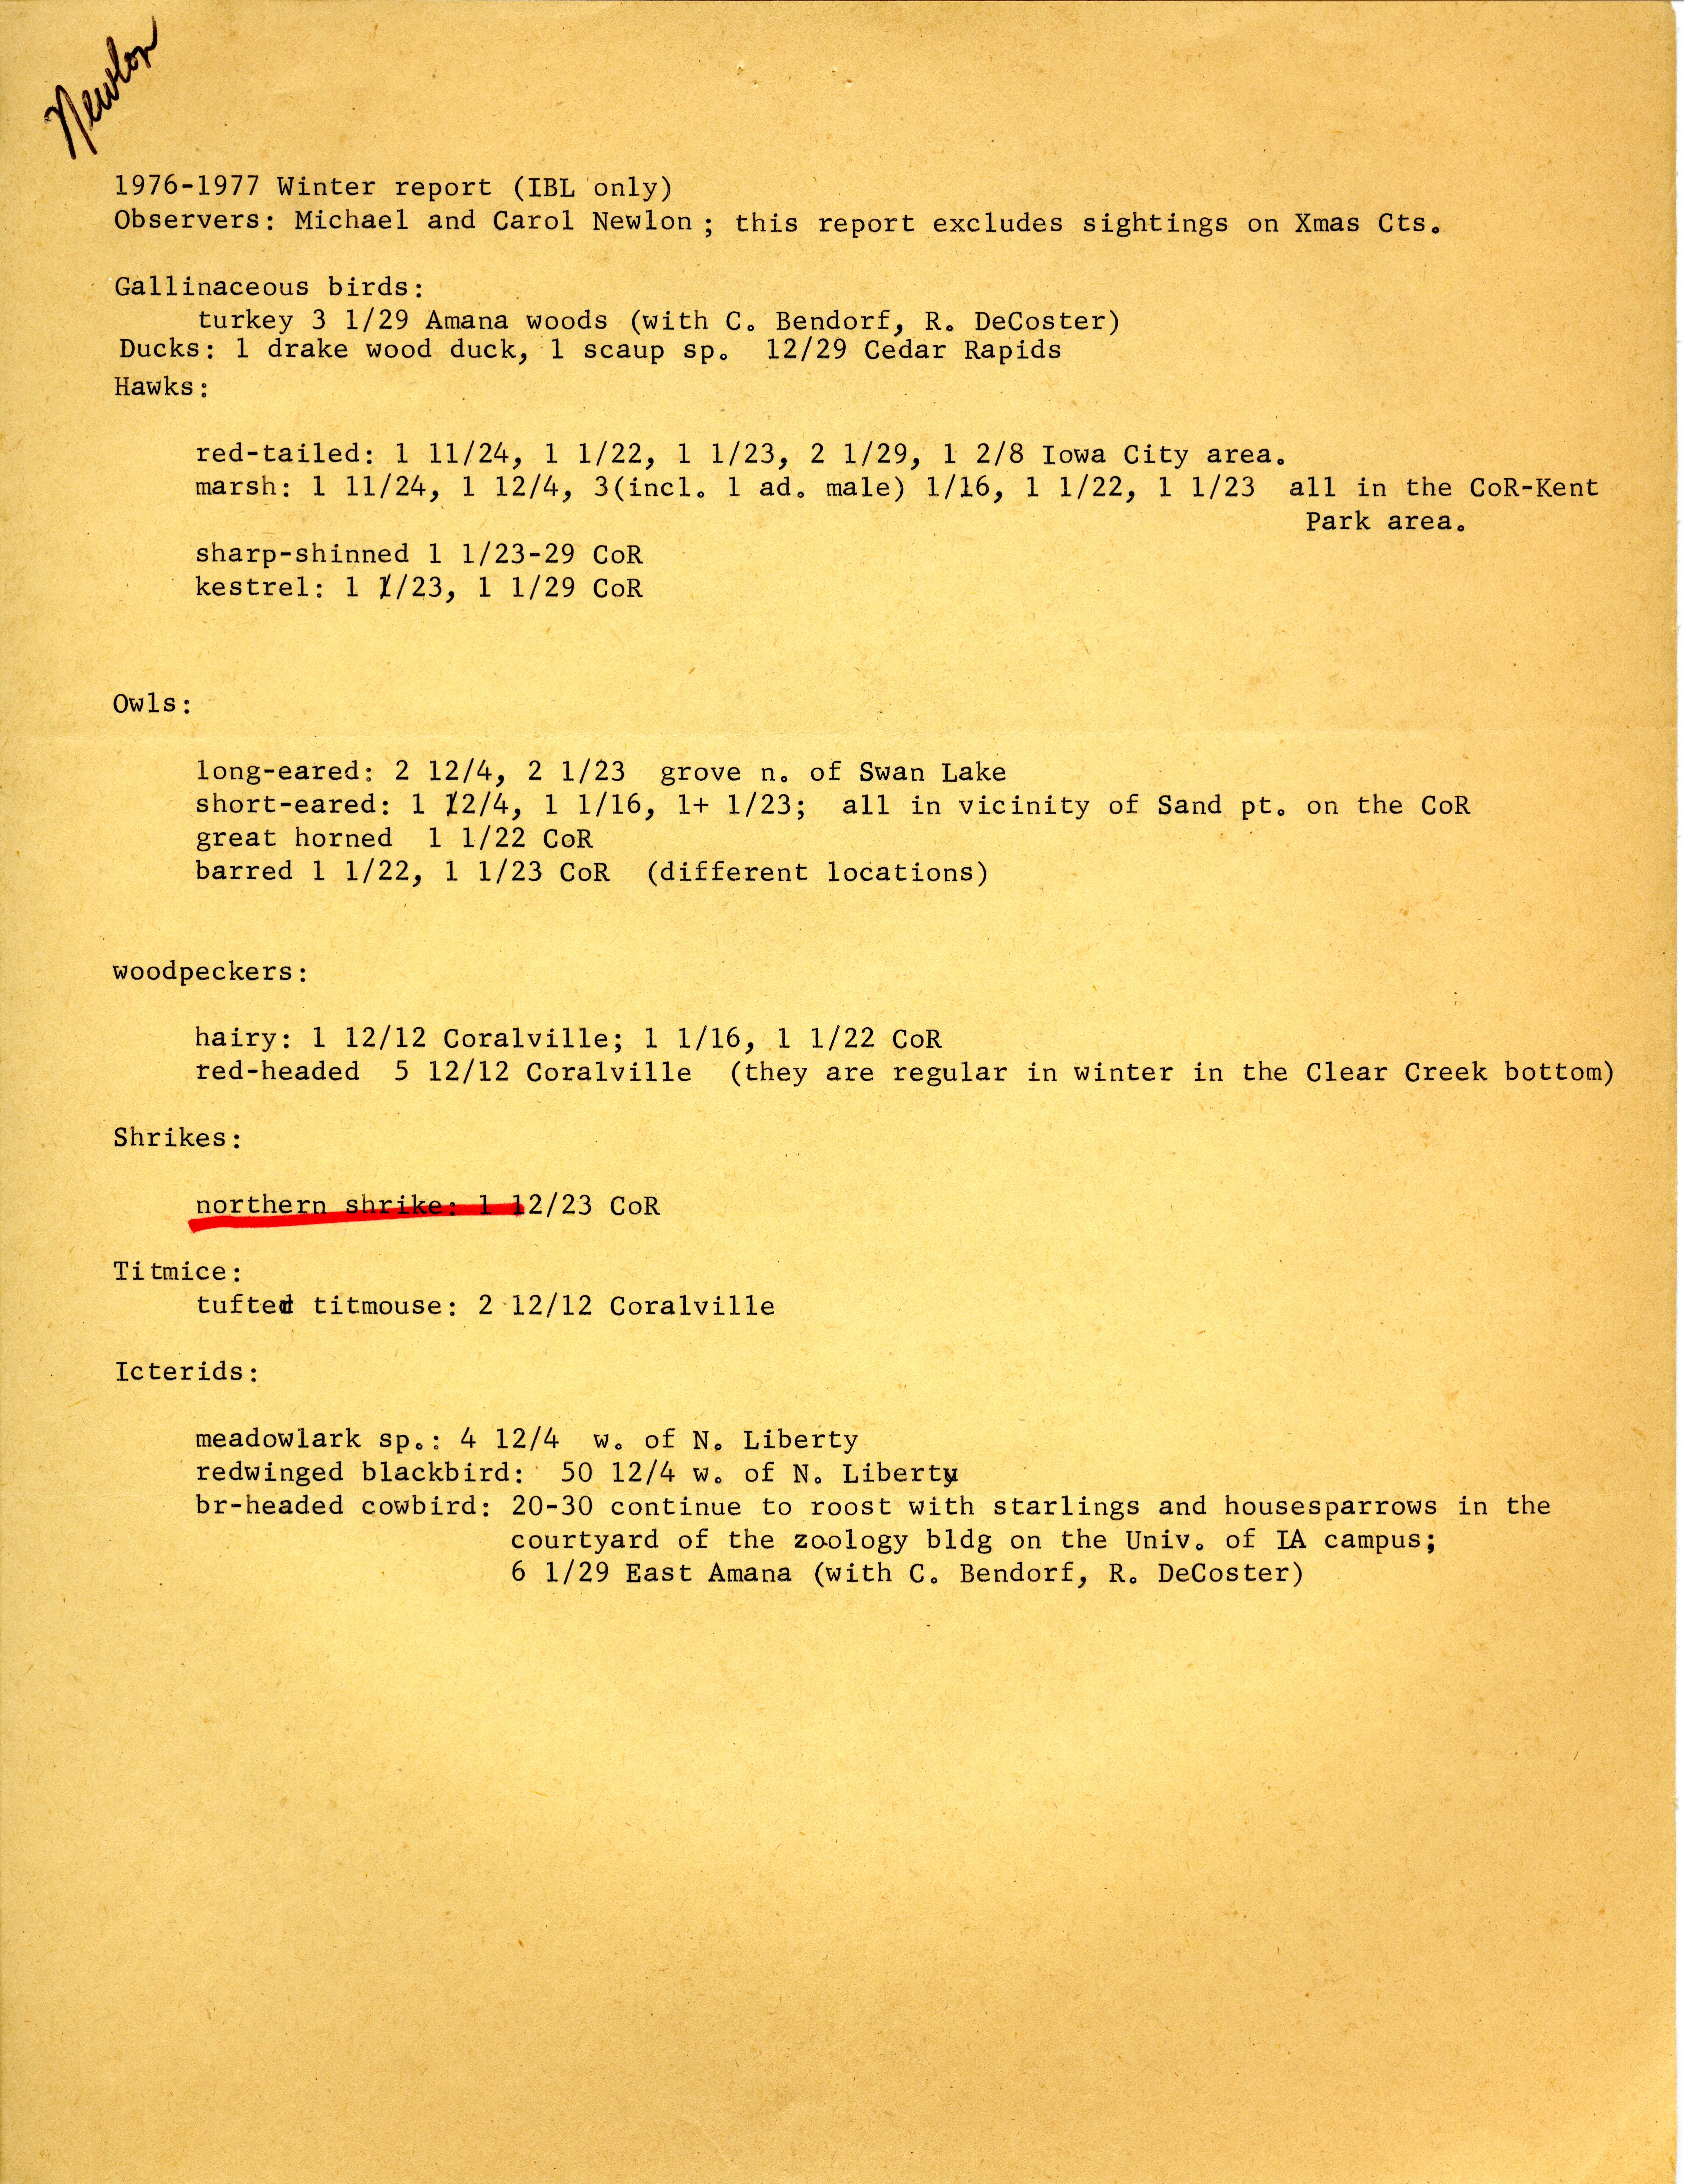 Field notes contributed by Michael C. Newlon and Carol Newlon, winter, 1976-1977